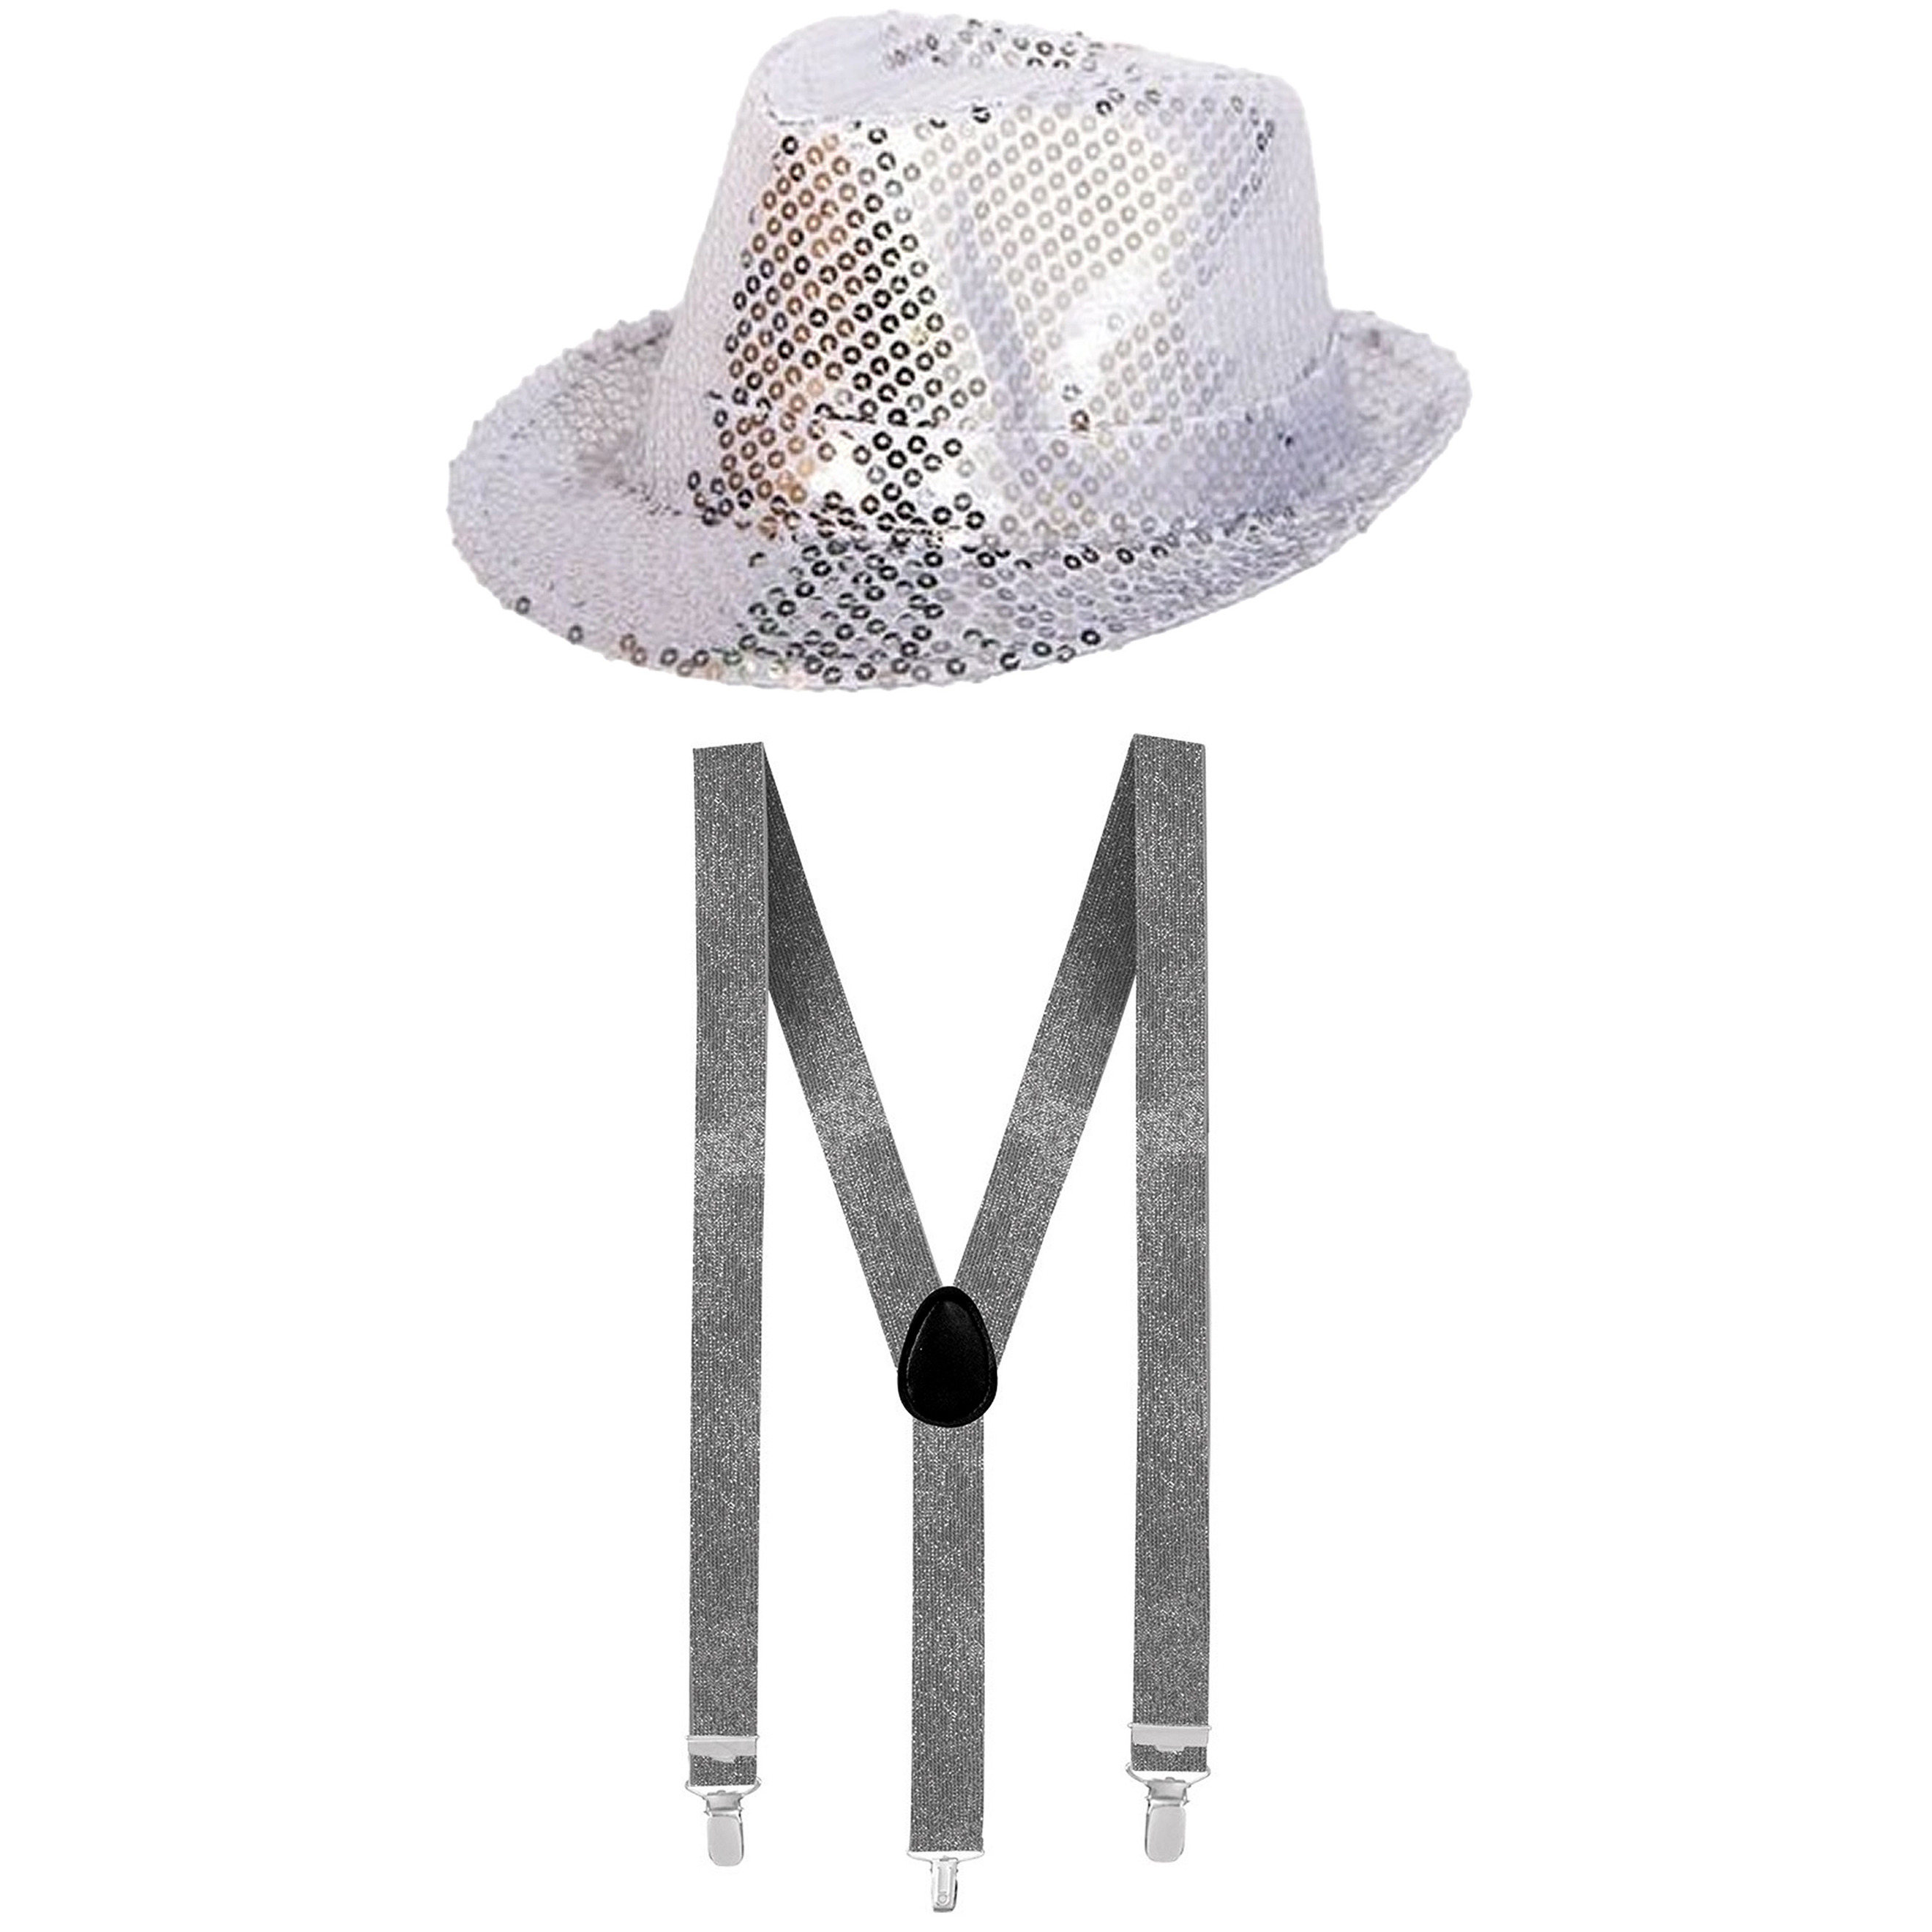 Toppers Carnaval verkleed set hoed met bretels zilver glitters